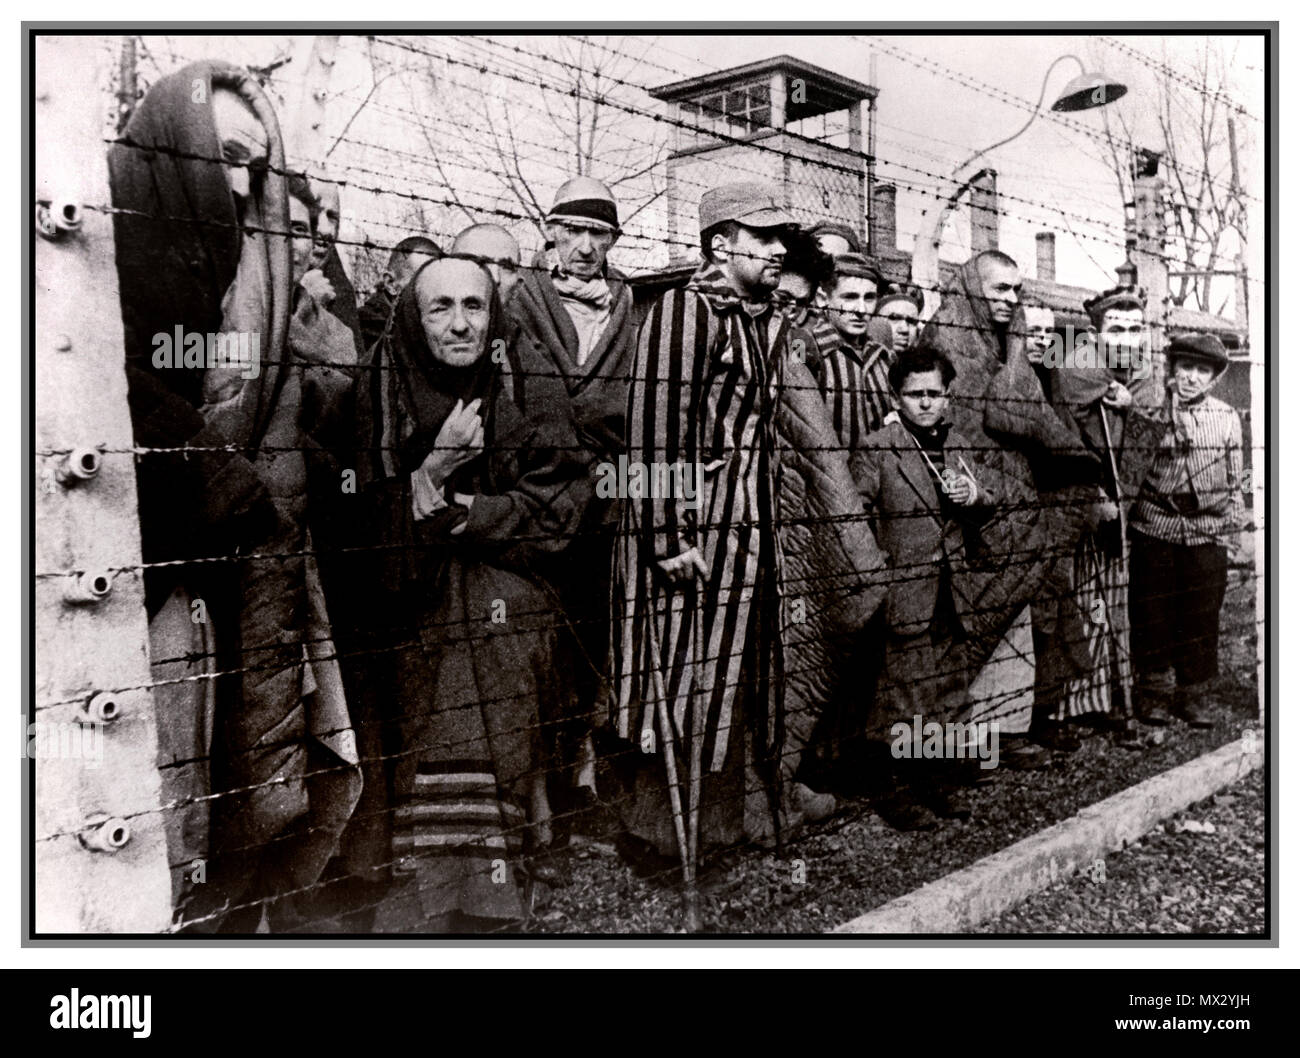 1940 Holocaust WW2 Nazis Konzentrationslager Auschwitz-Birkenau. Männliche Gefangene hinter Stacheldraht elektrifiziert bei eisigen Gefängnis statt beengt erniedrigenden unmenschlichen Bedingungen. Dieses düstere emotionslos Bild wurde durch ihre Befreier 1945 aufgenommen. Mehr als 1,1 Millionen Menschen starben in Auschwitz, darunter fast eine Million Juden. Diejenigen, die nicht direkt mit Gaskammern geschickt wurden zu harten Zwangsarbeit verurteilt. Das Konzentrationslager Auschwitz Komplex war entscheidend für die Durchführung der NS-Plan für die "endgültigen Lösung." Auschwitz seine Spuren hinterlassen als einer der berüchtigsten Vernichtungslager des Zweiten Weltkriegs Stockfoto